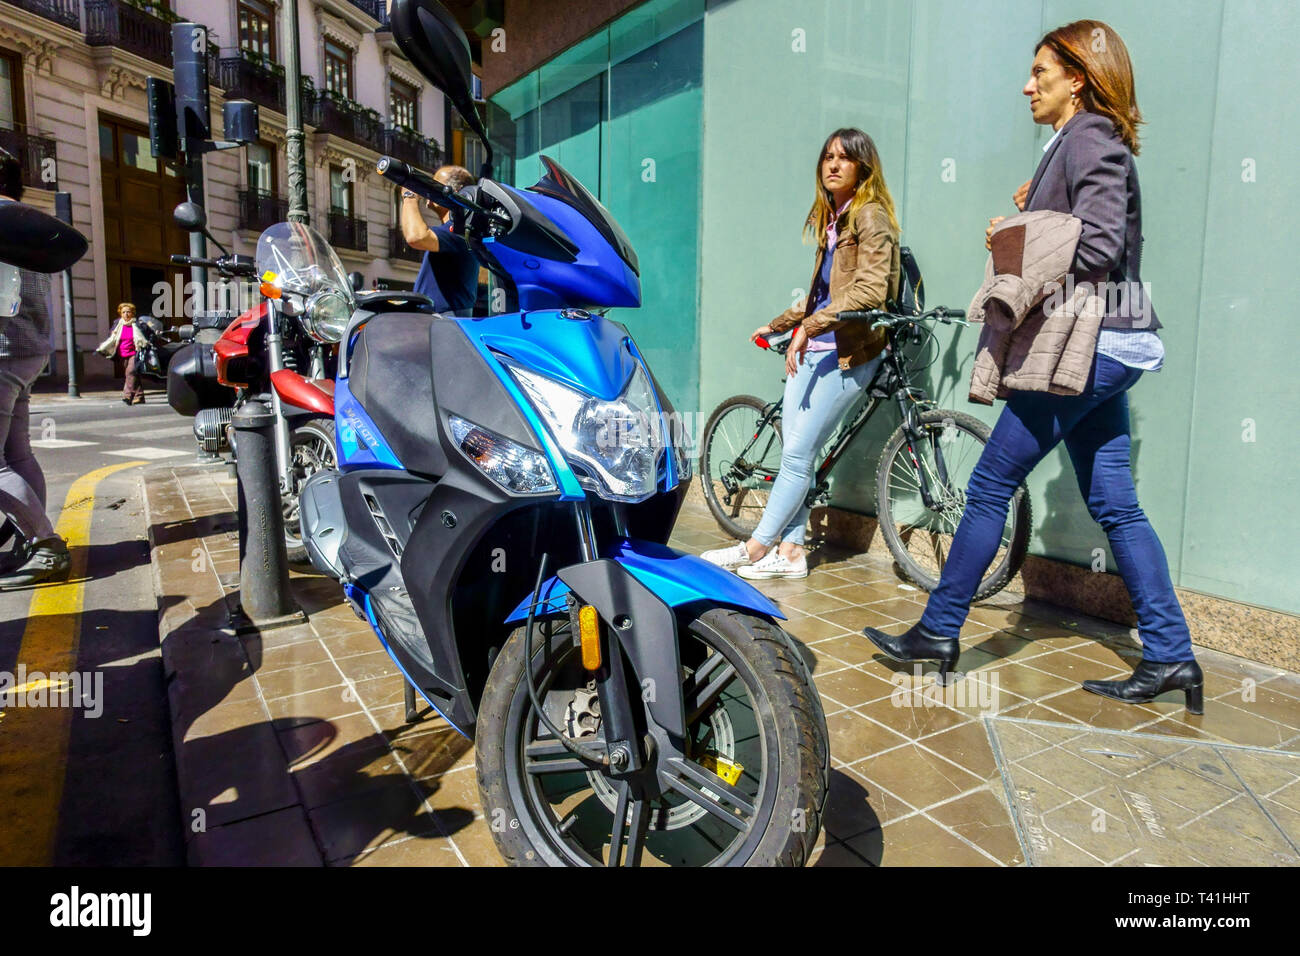 Vue de scène de rue de Valence, femme marchant la vie quotidienne Valence Espagne Europe Banque D'Images